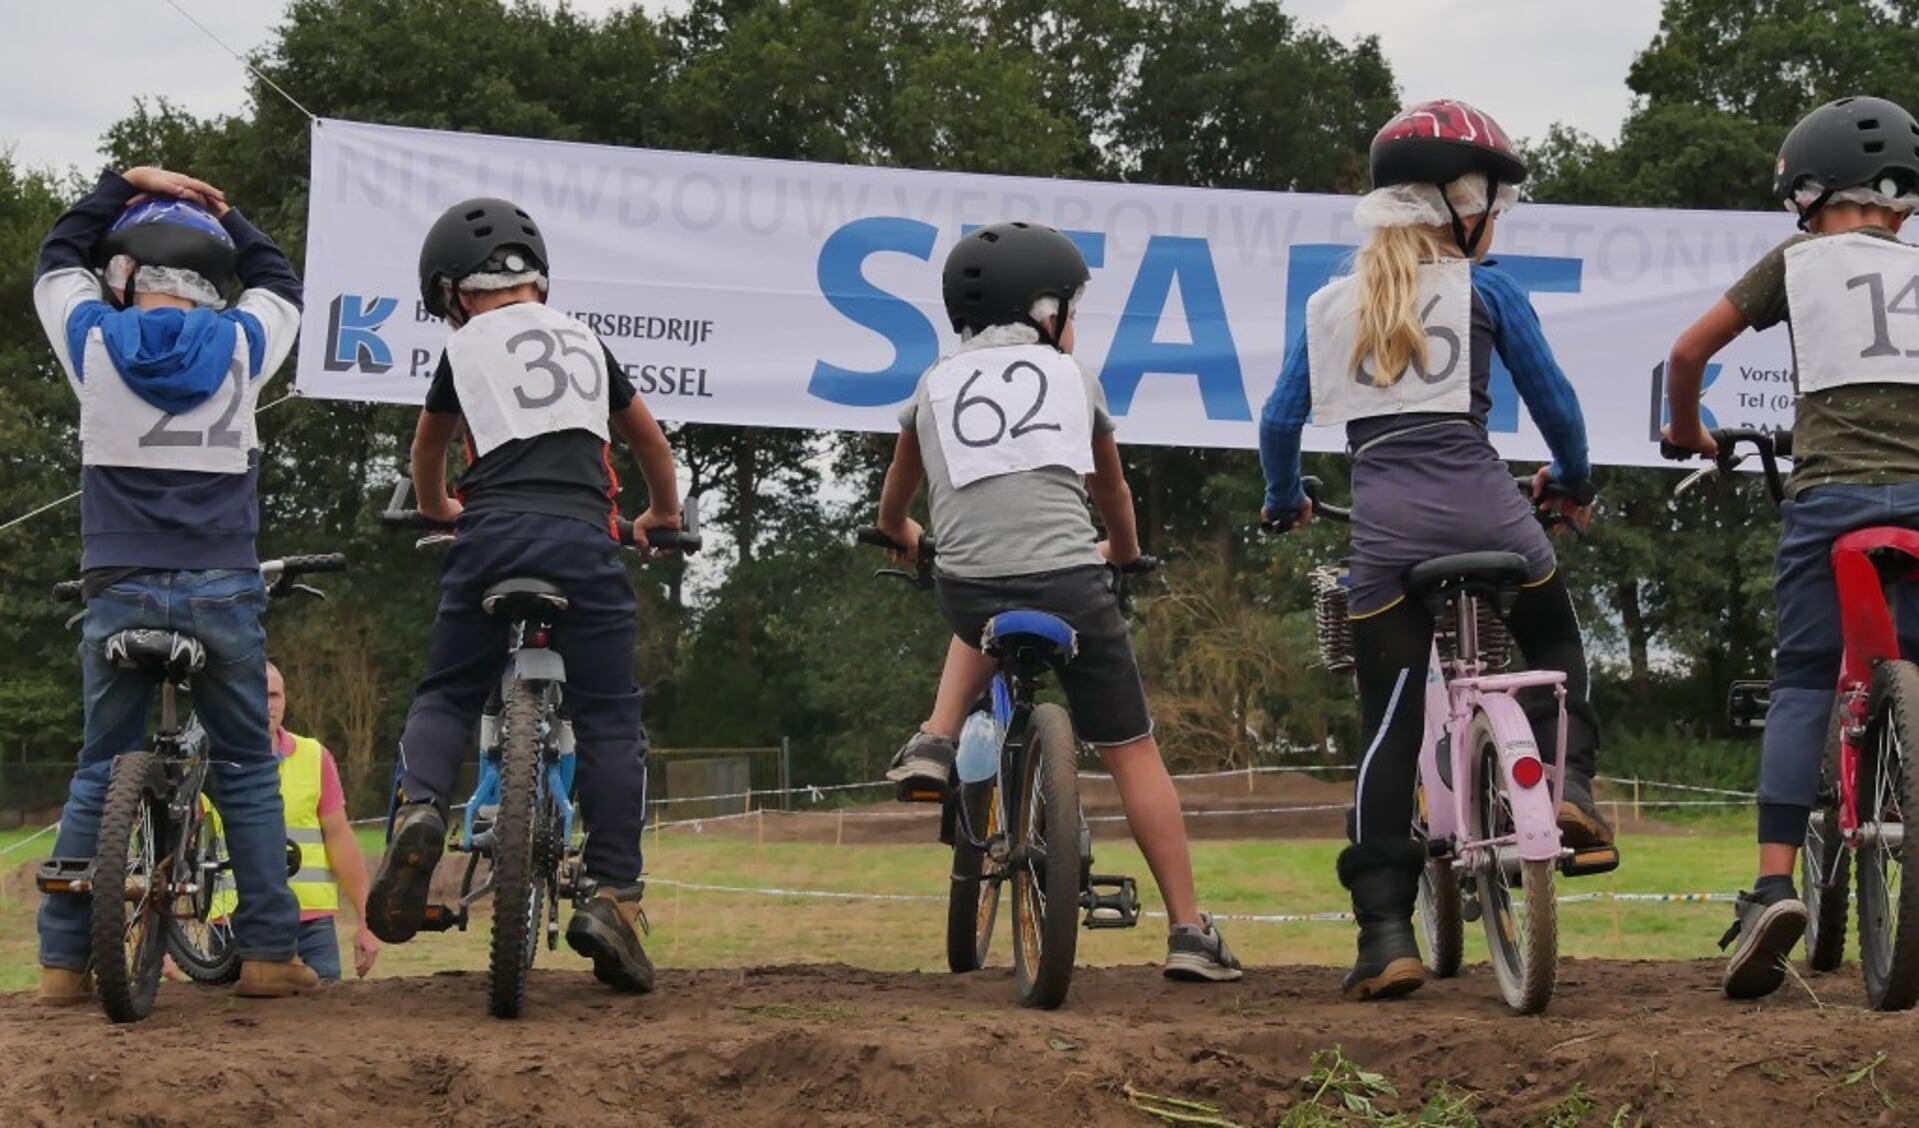 SJB Vorstenbosch organiseerde succesvolle crossfiets- wedstrijden 